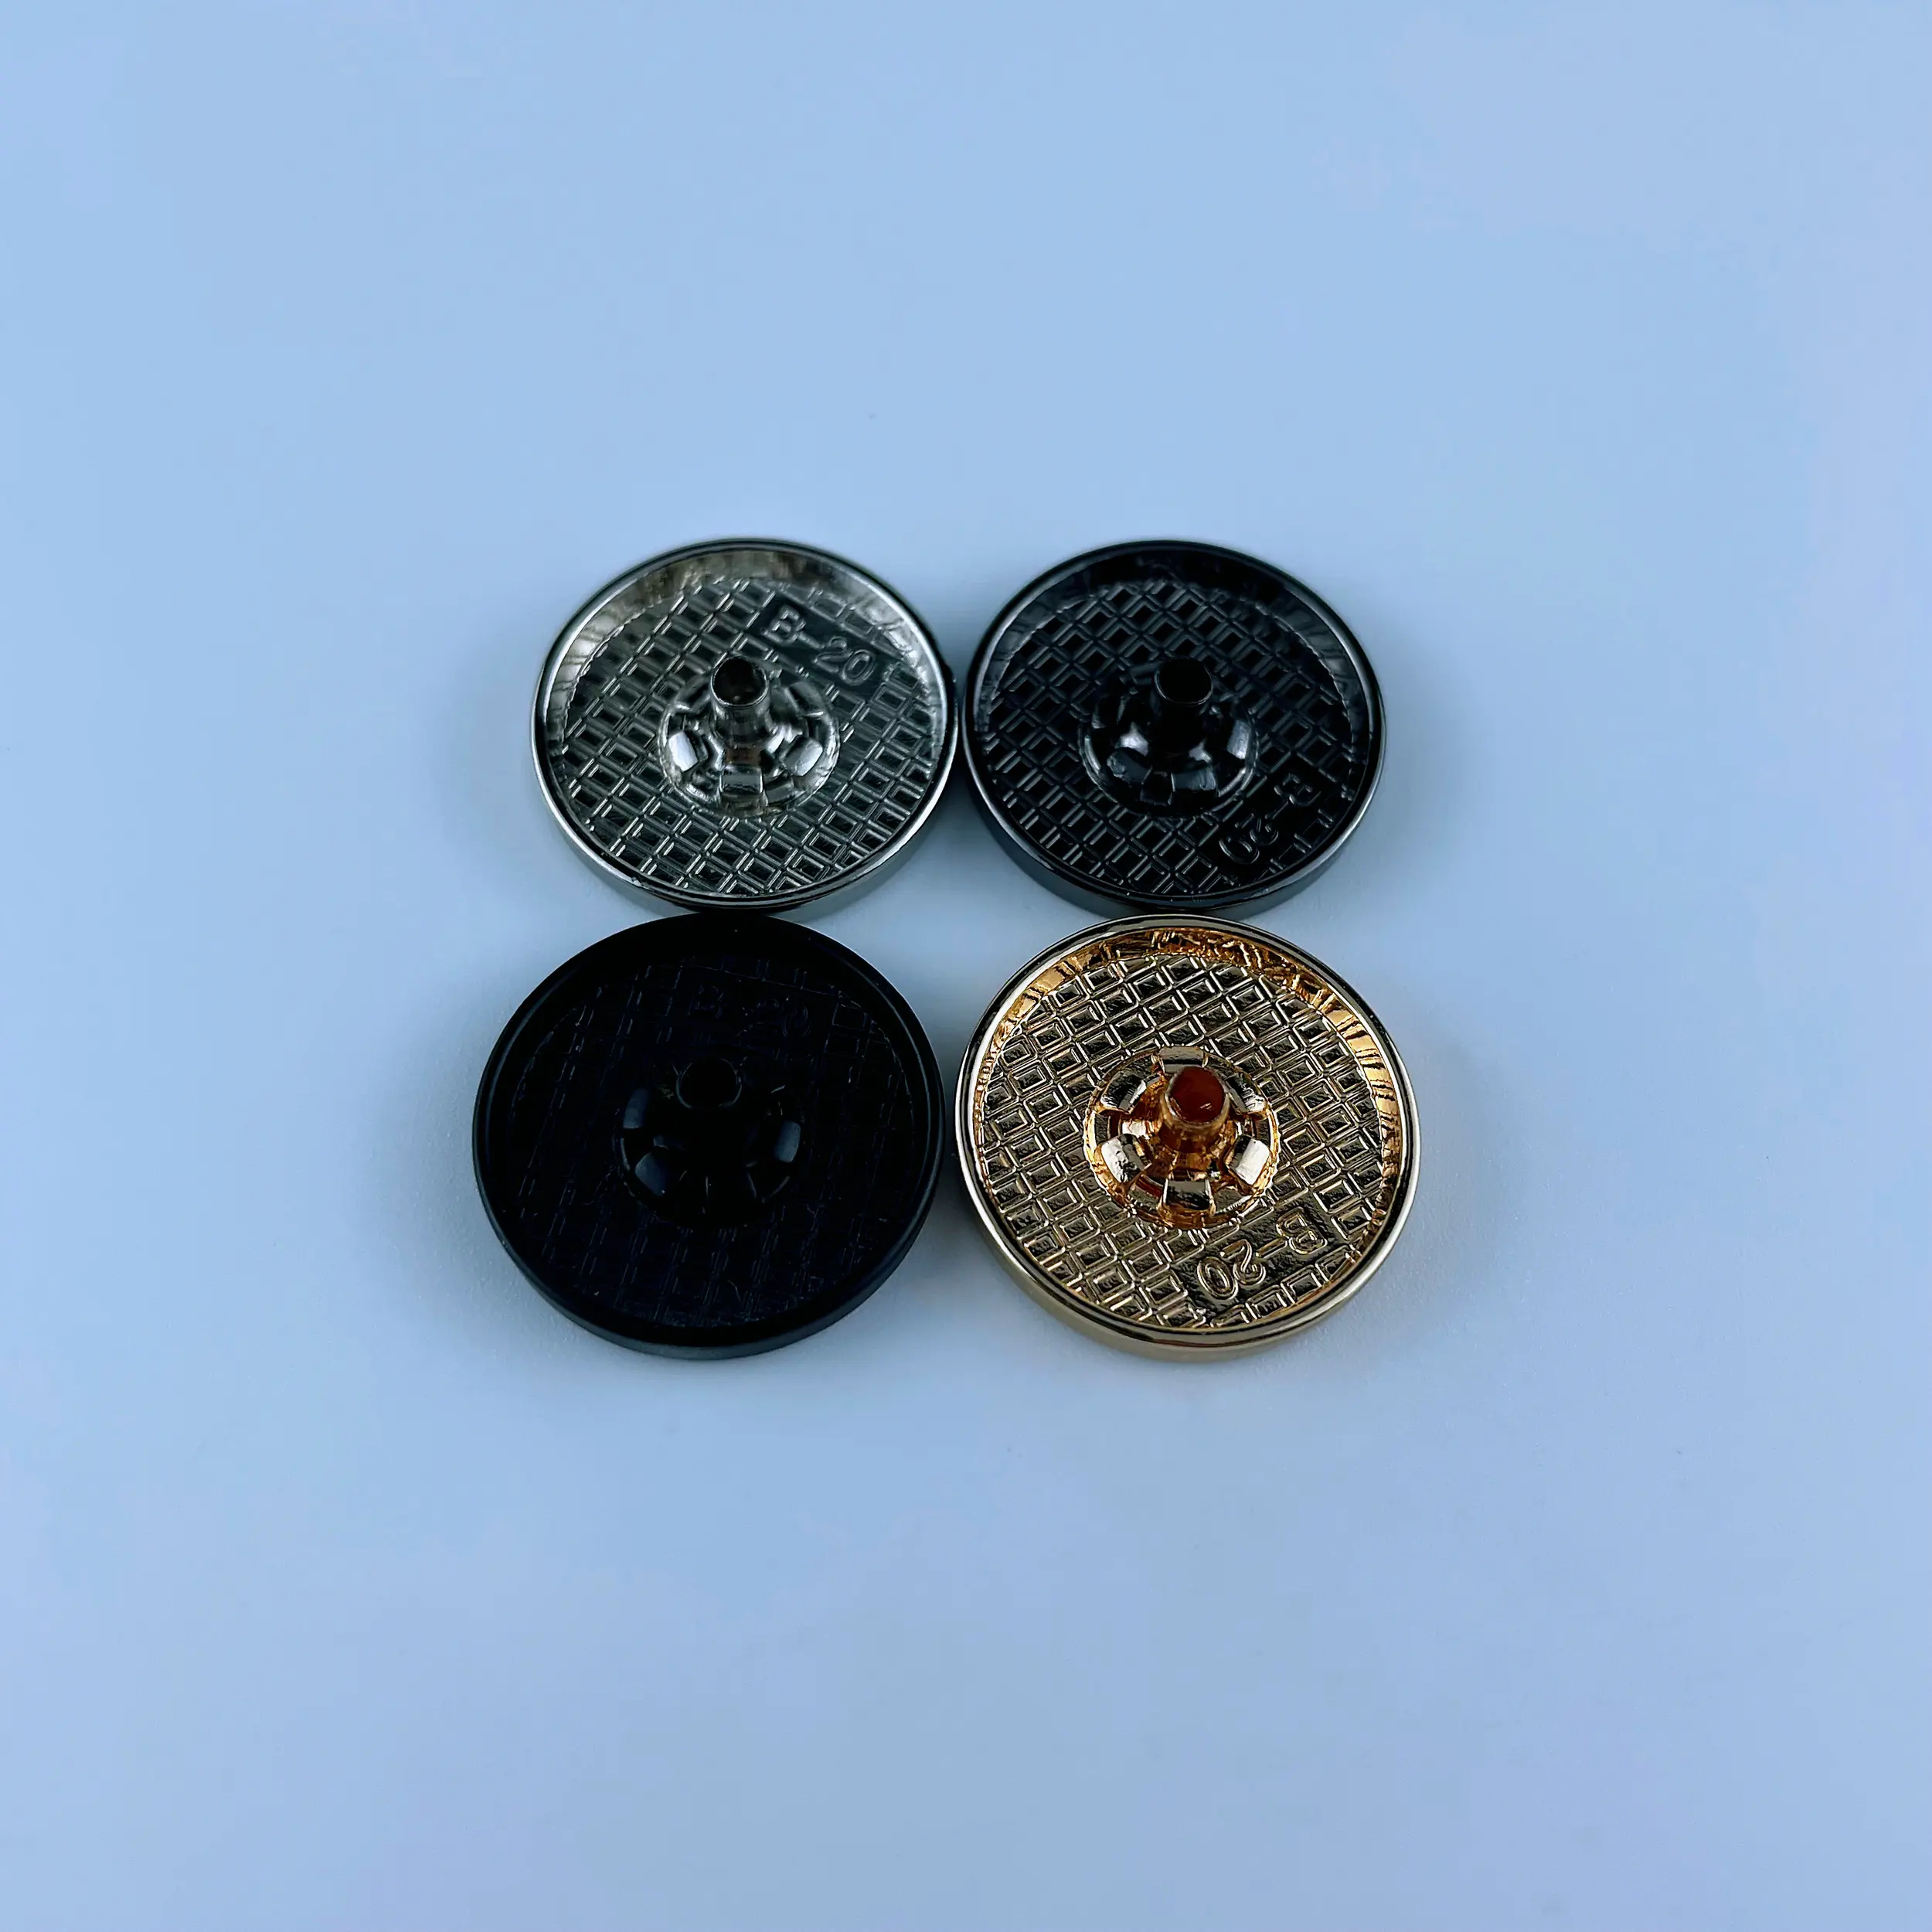 Befestigung 4 Teile Knopfleiste Überzug Schaft flache Oberfläche Metall Zinklegierung runder Vt3 Kunststoff für neues Design kundenspezifisch nickelfrei